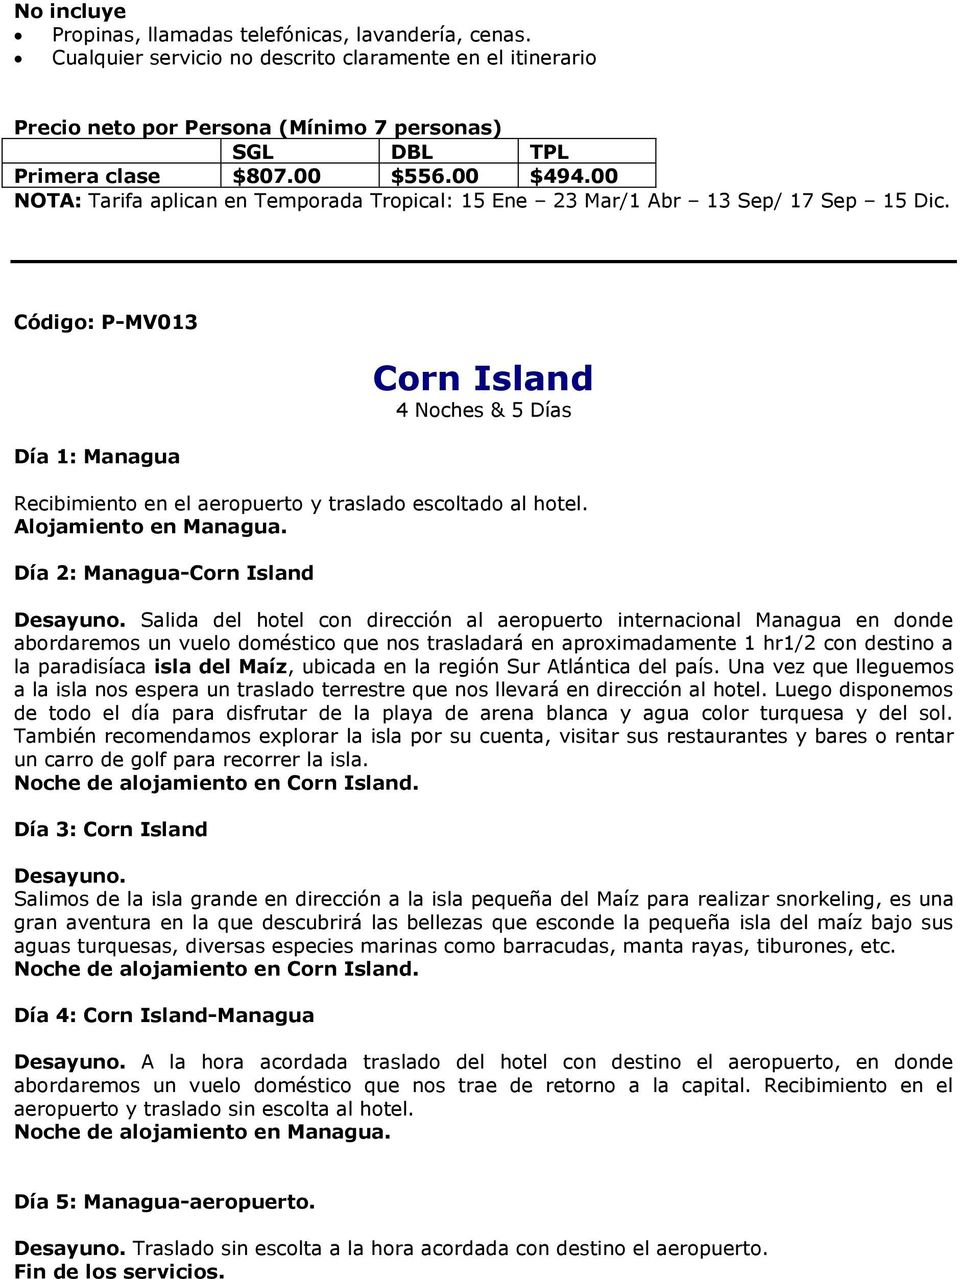 Código: P-MV013 Día 1: Managua Corn Island 4 Noches & 5 Días Recibimiento en el aeropuerto y traslado escoltado al hotel. Alojamiento en Managua. Día 2: Managua-Corn Island Desayuno.